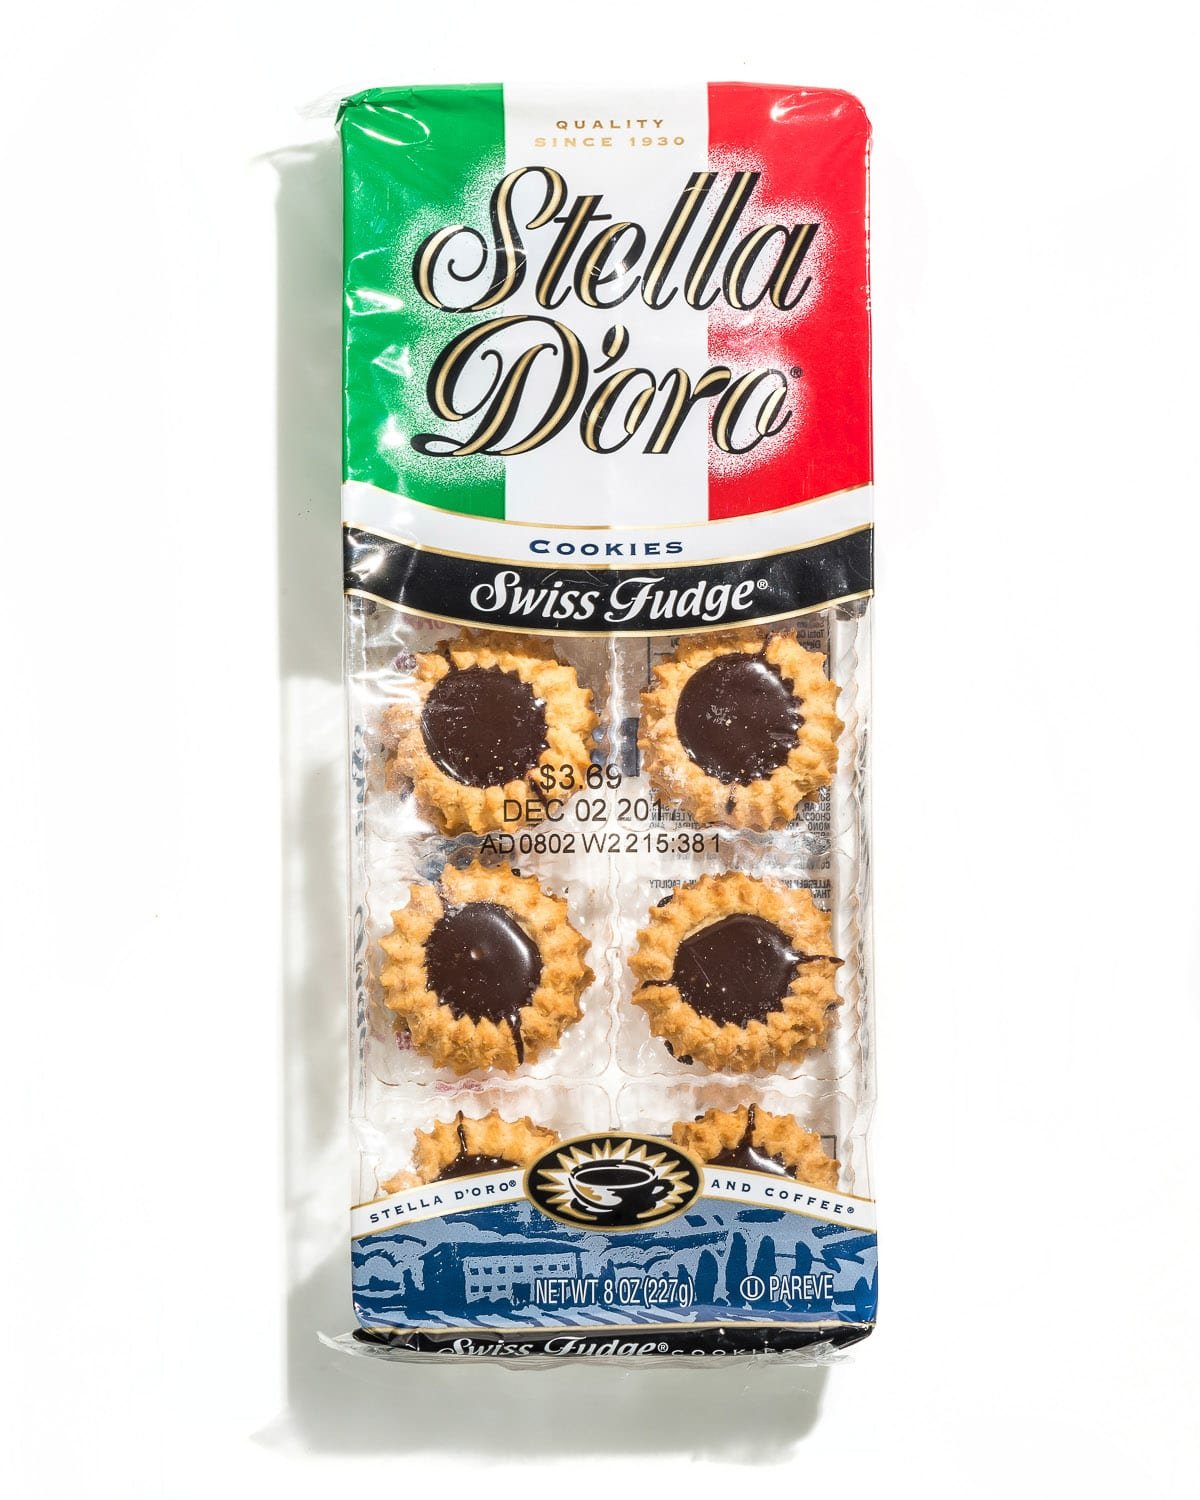 Stella D'oro Swiss Fudge Cookies